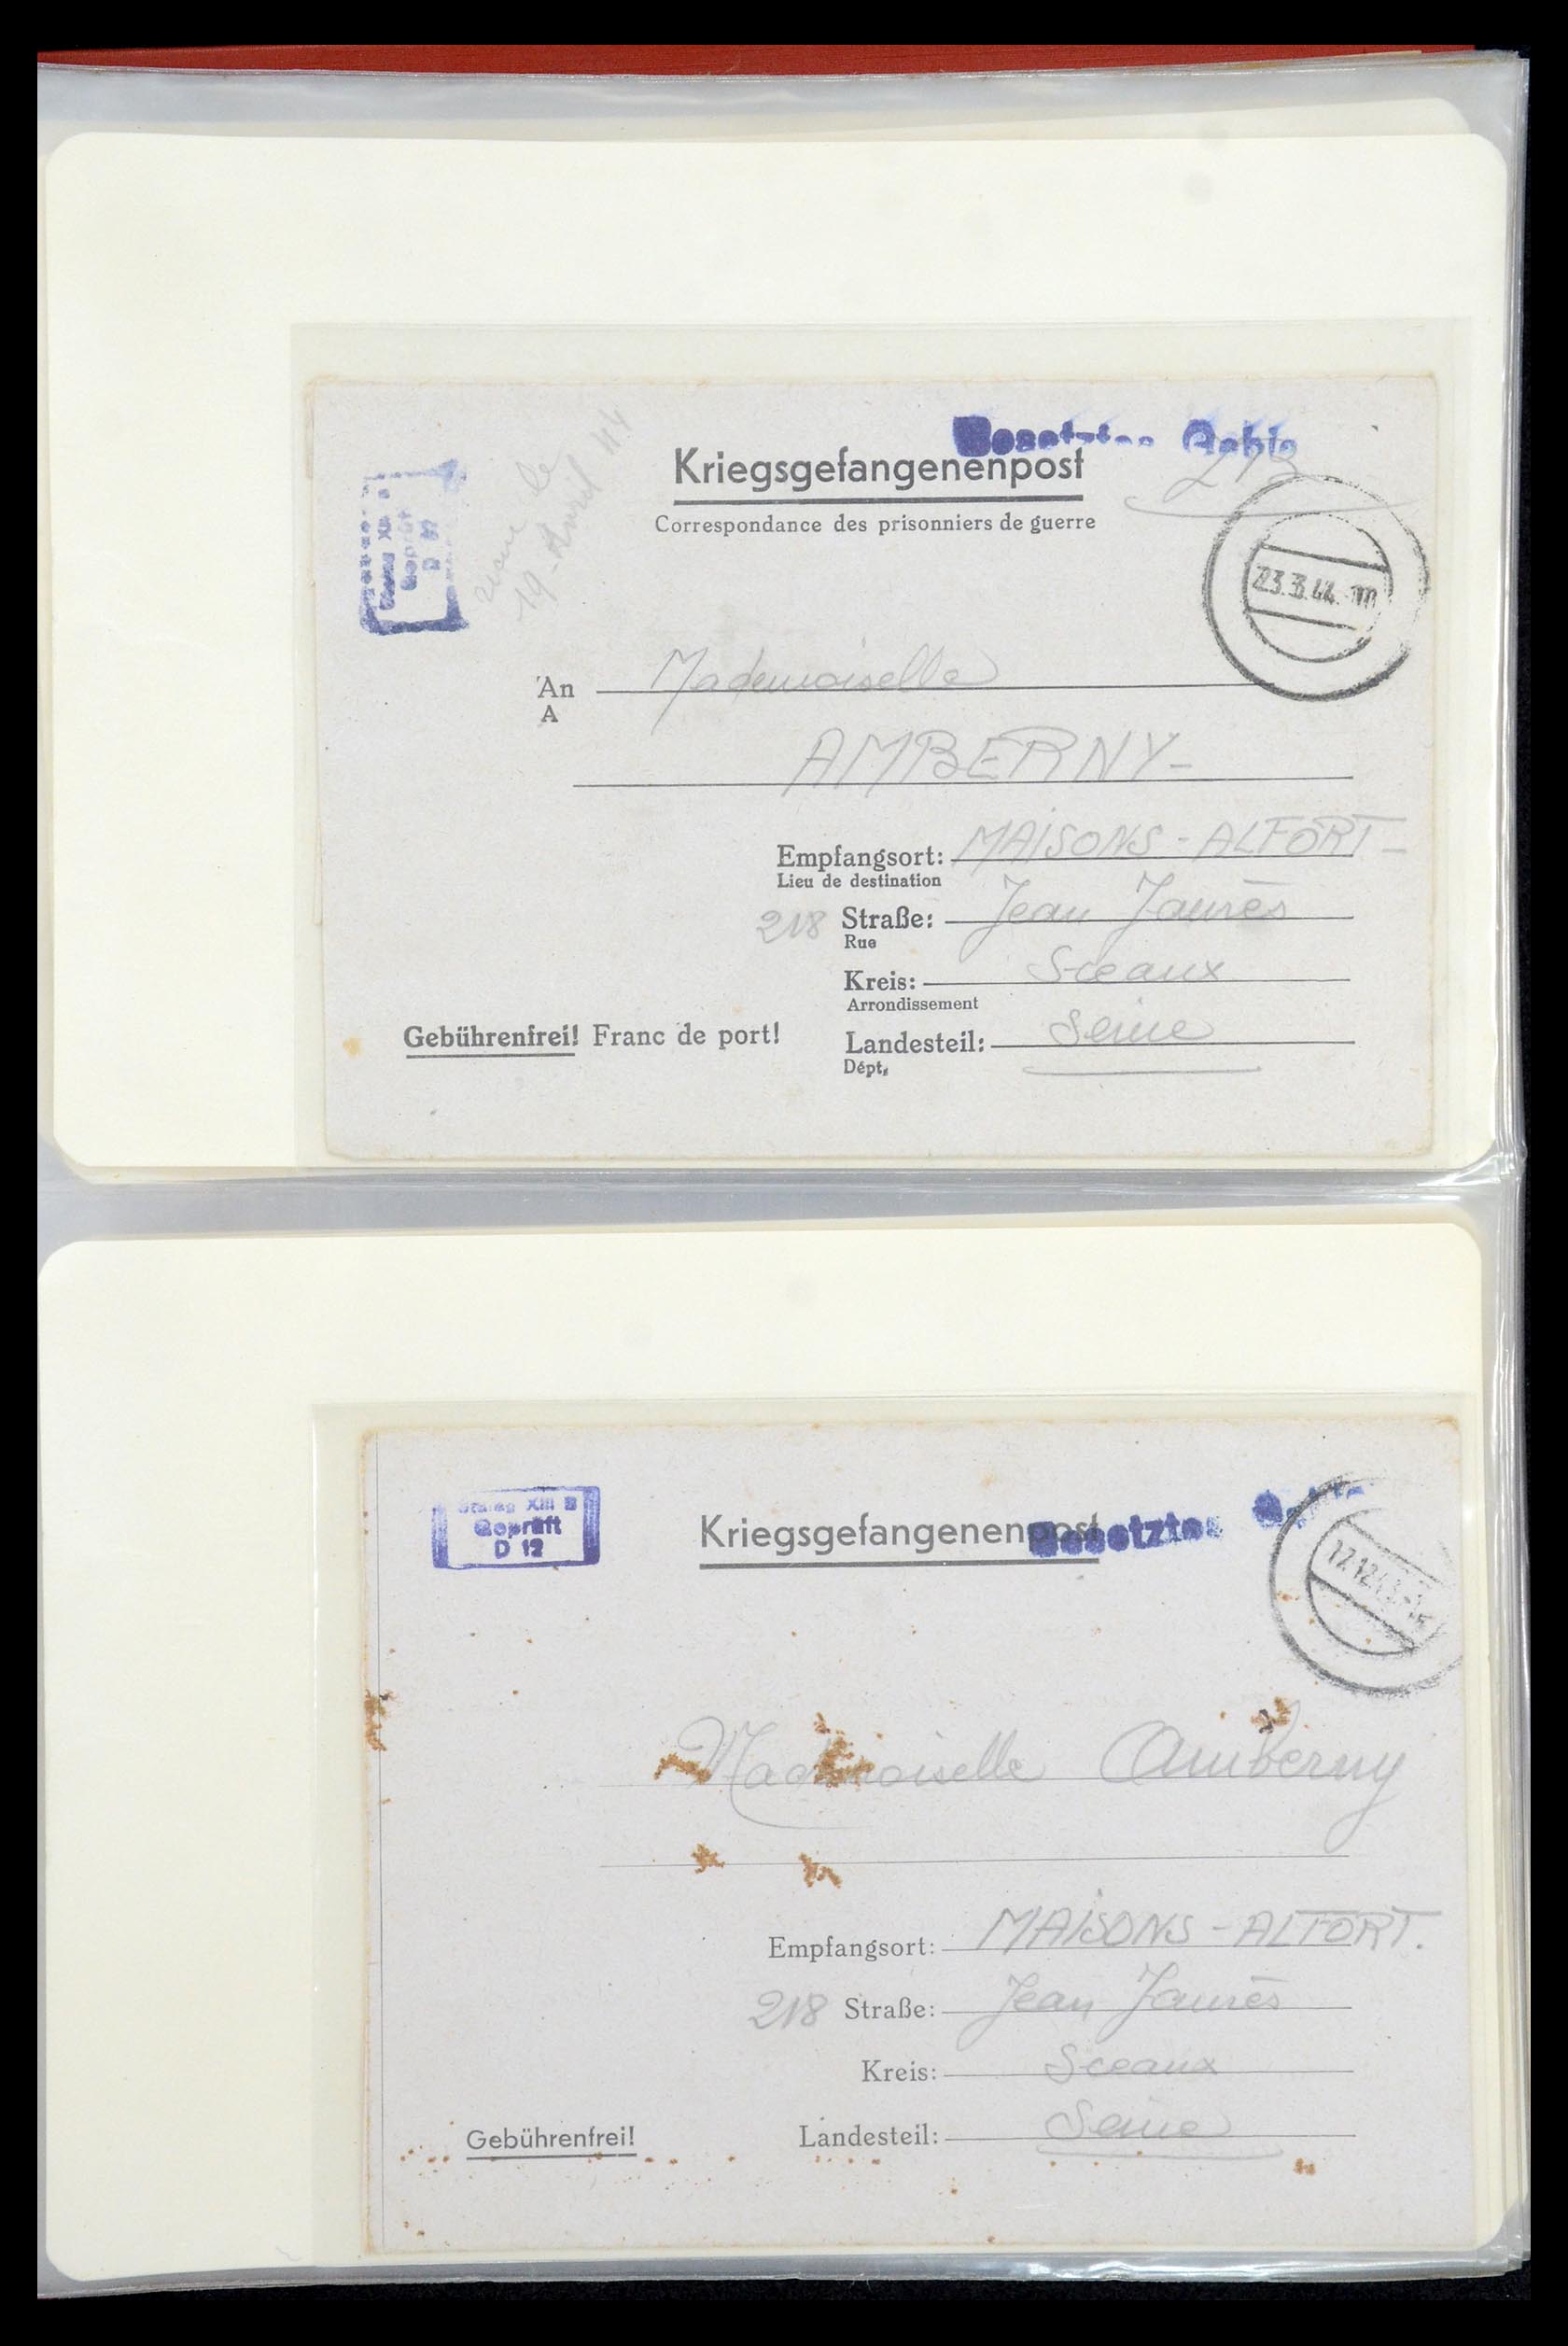 35599 003 - Stamp Collection 35599 Germany prisoner of war cards 1940-1944.